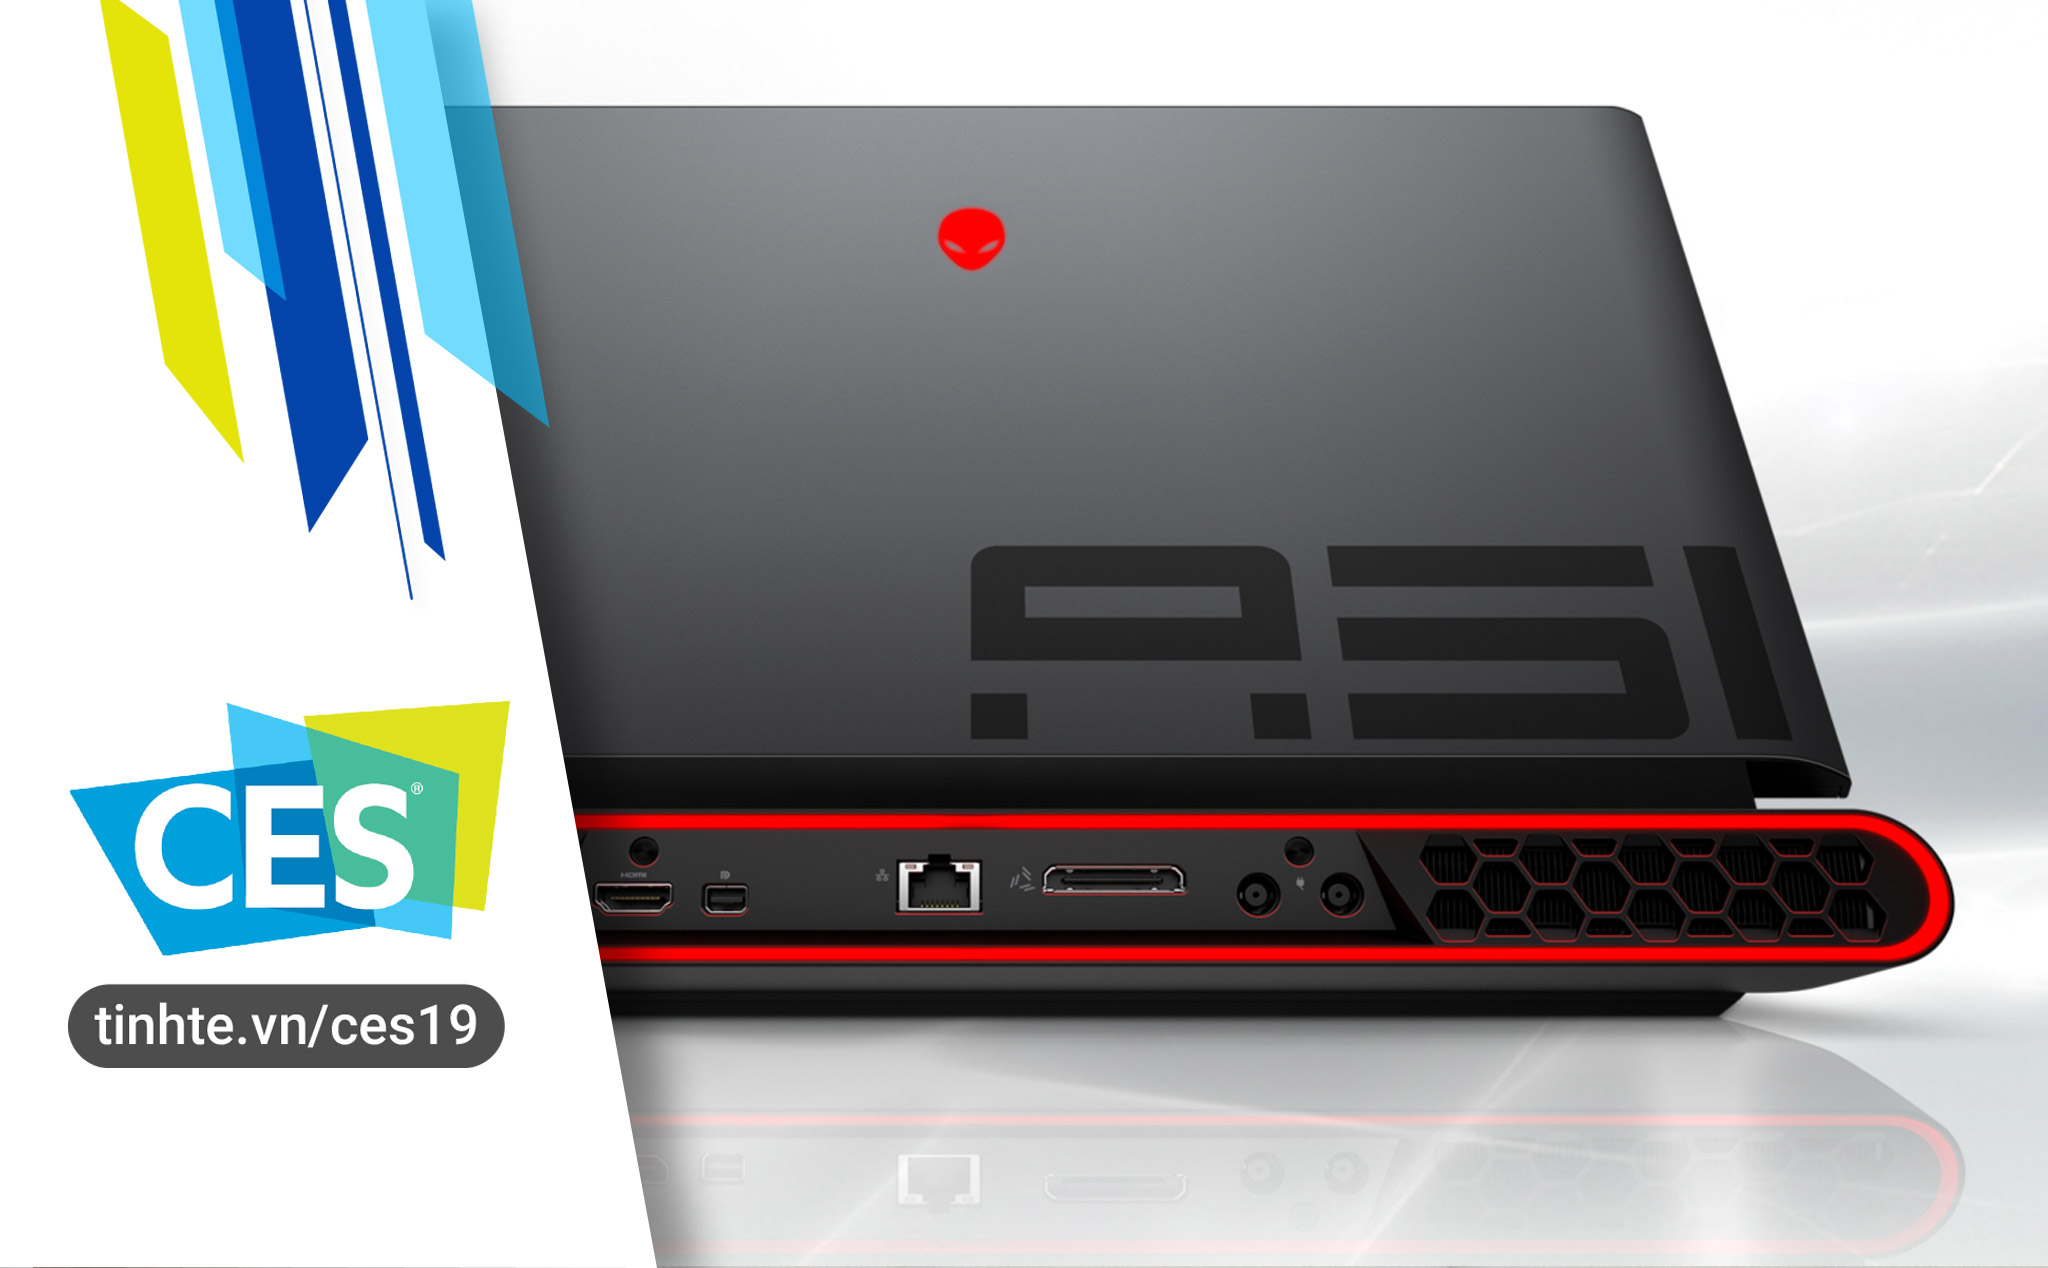 #CES19: Alienware Area-m51 - laptop chơi game mạnh nhất, dễ nâng cấp phần cứng nhất, giá chỉ 2549$